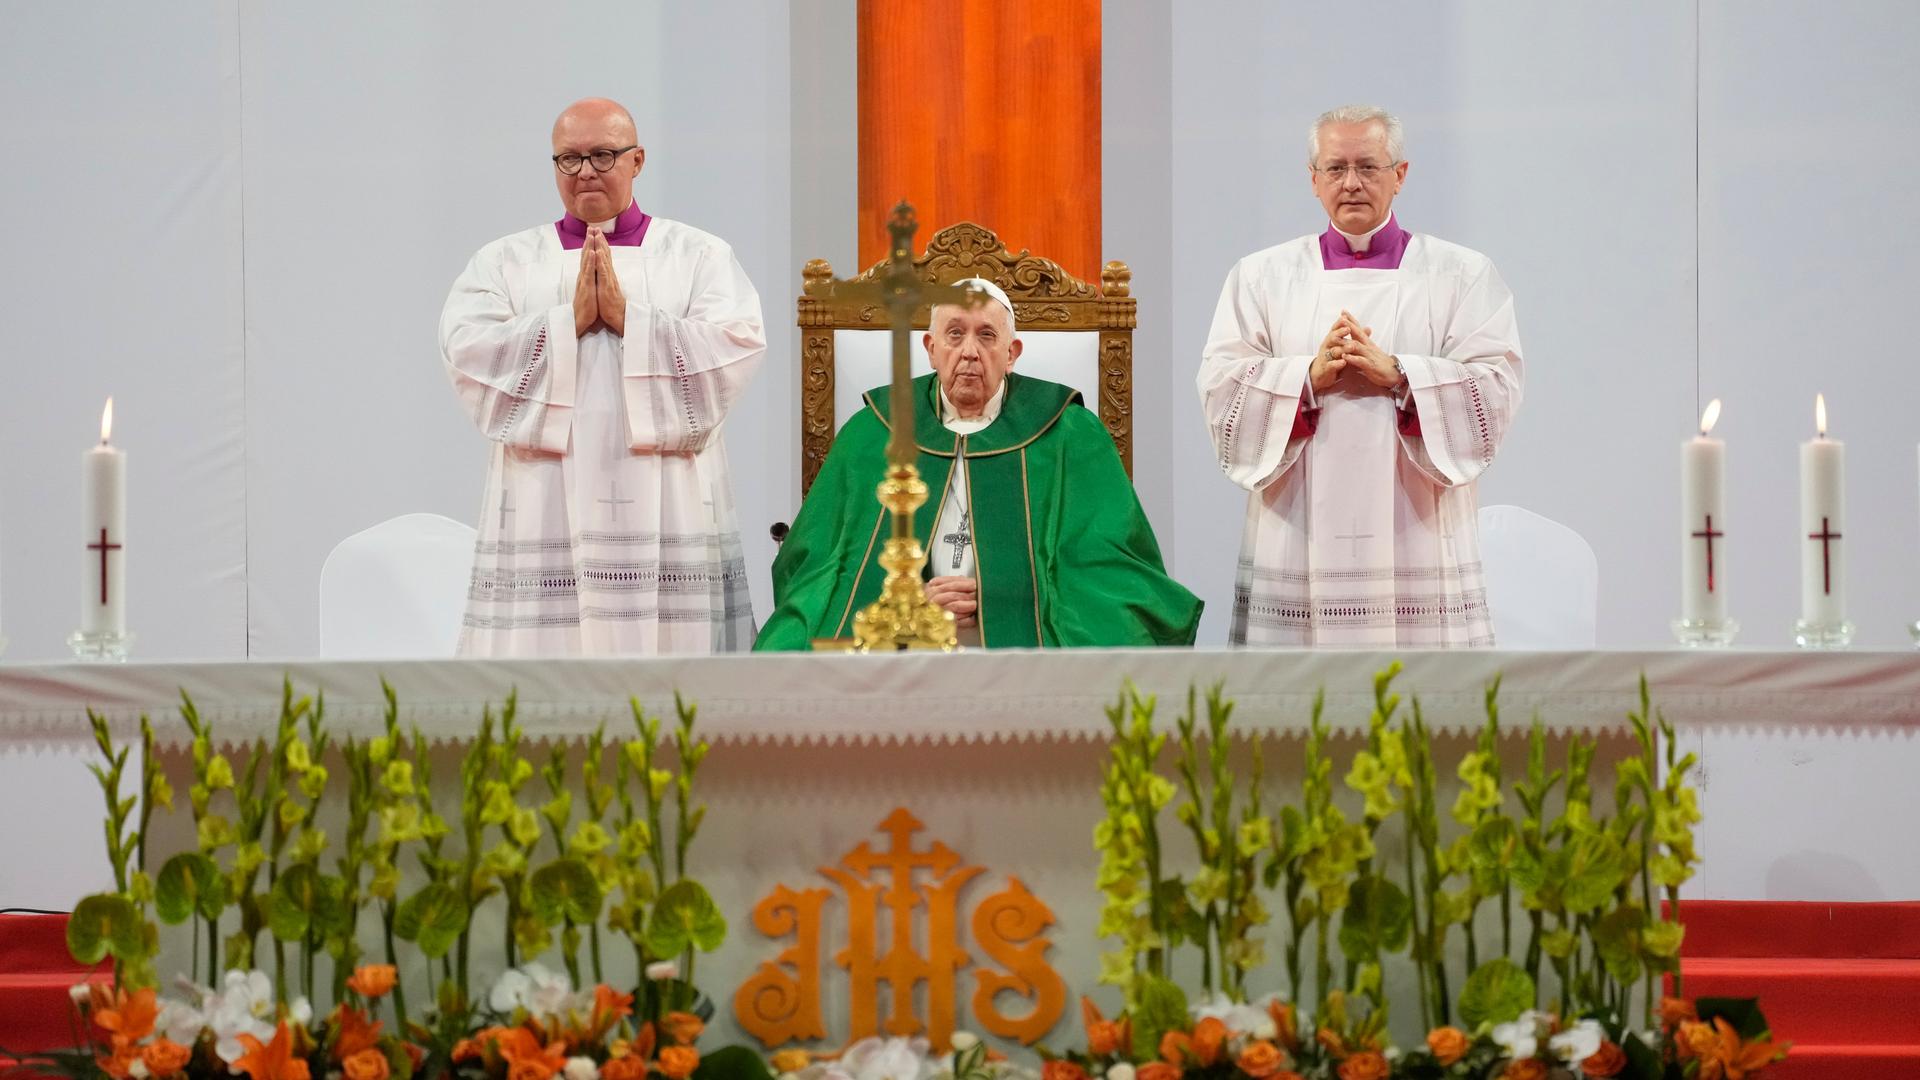 Der Papst sitzt im grünen Ornat an der Mitte des Altars vor einem Kreuz. An beiden Seiten jeweils ein Geistlicher in weiß, der die Hände zum Gebet gefaltet hat.